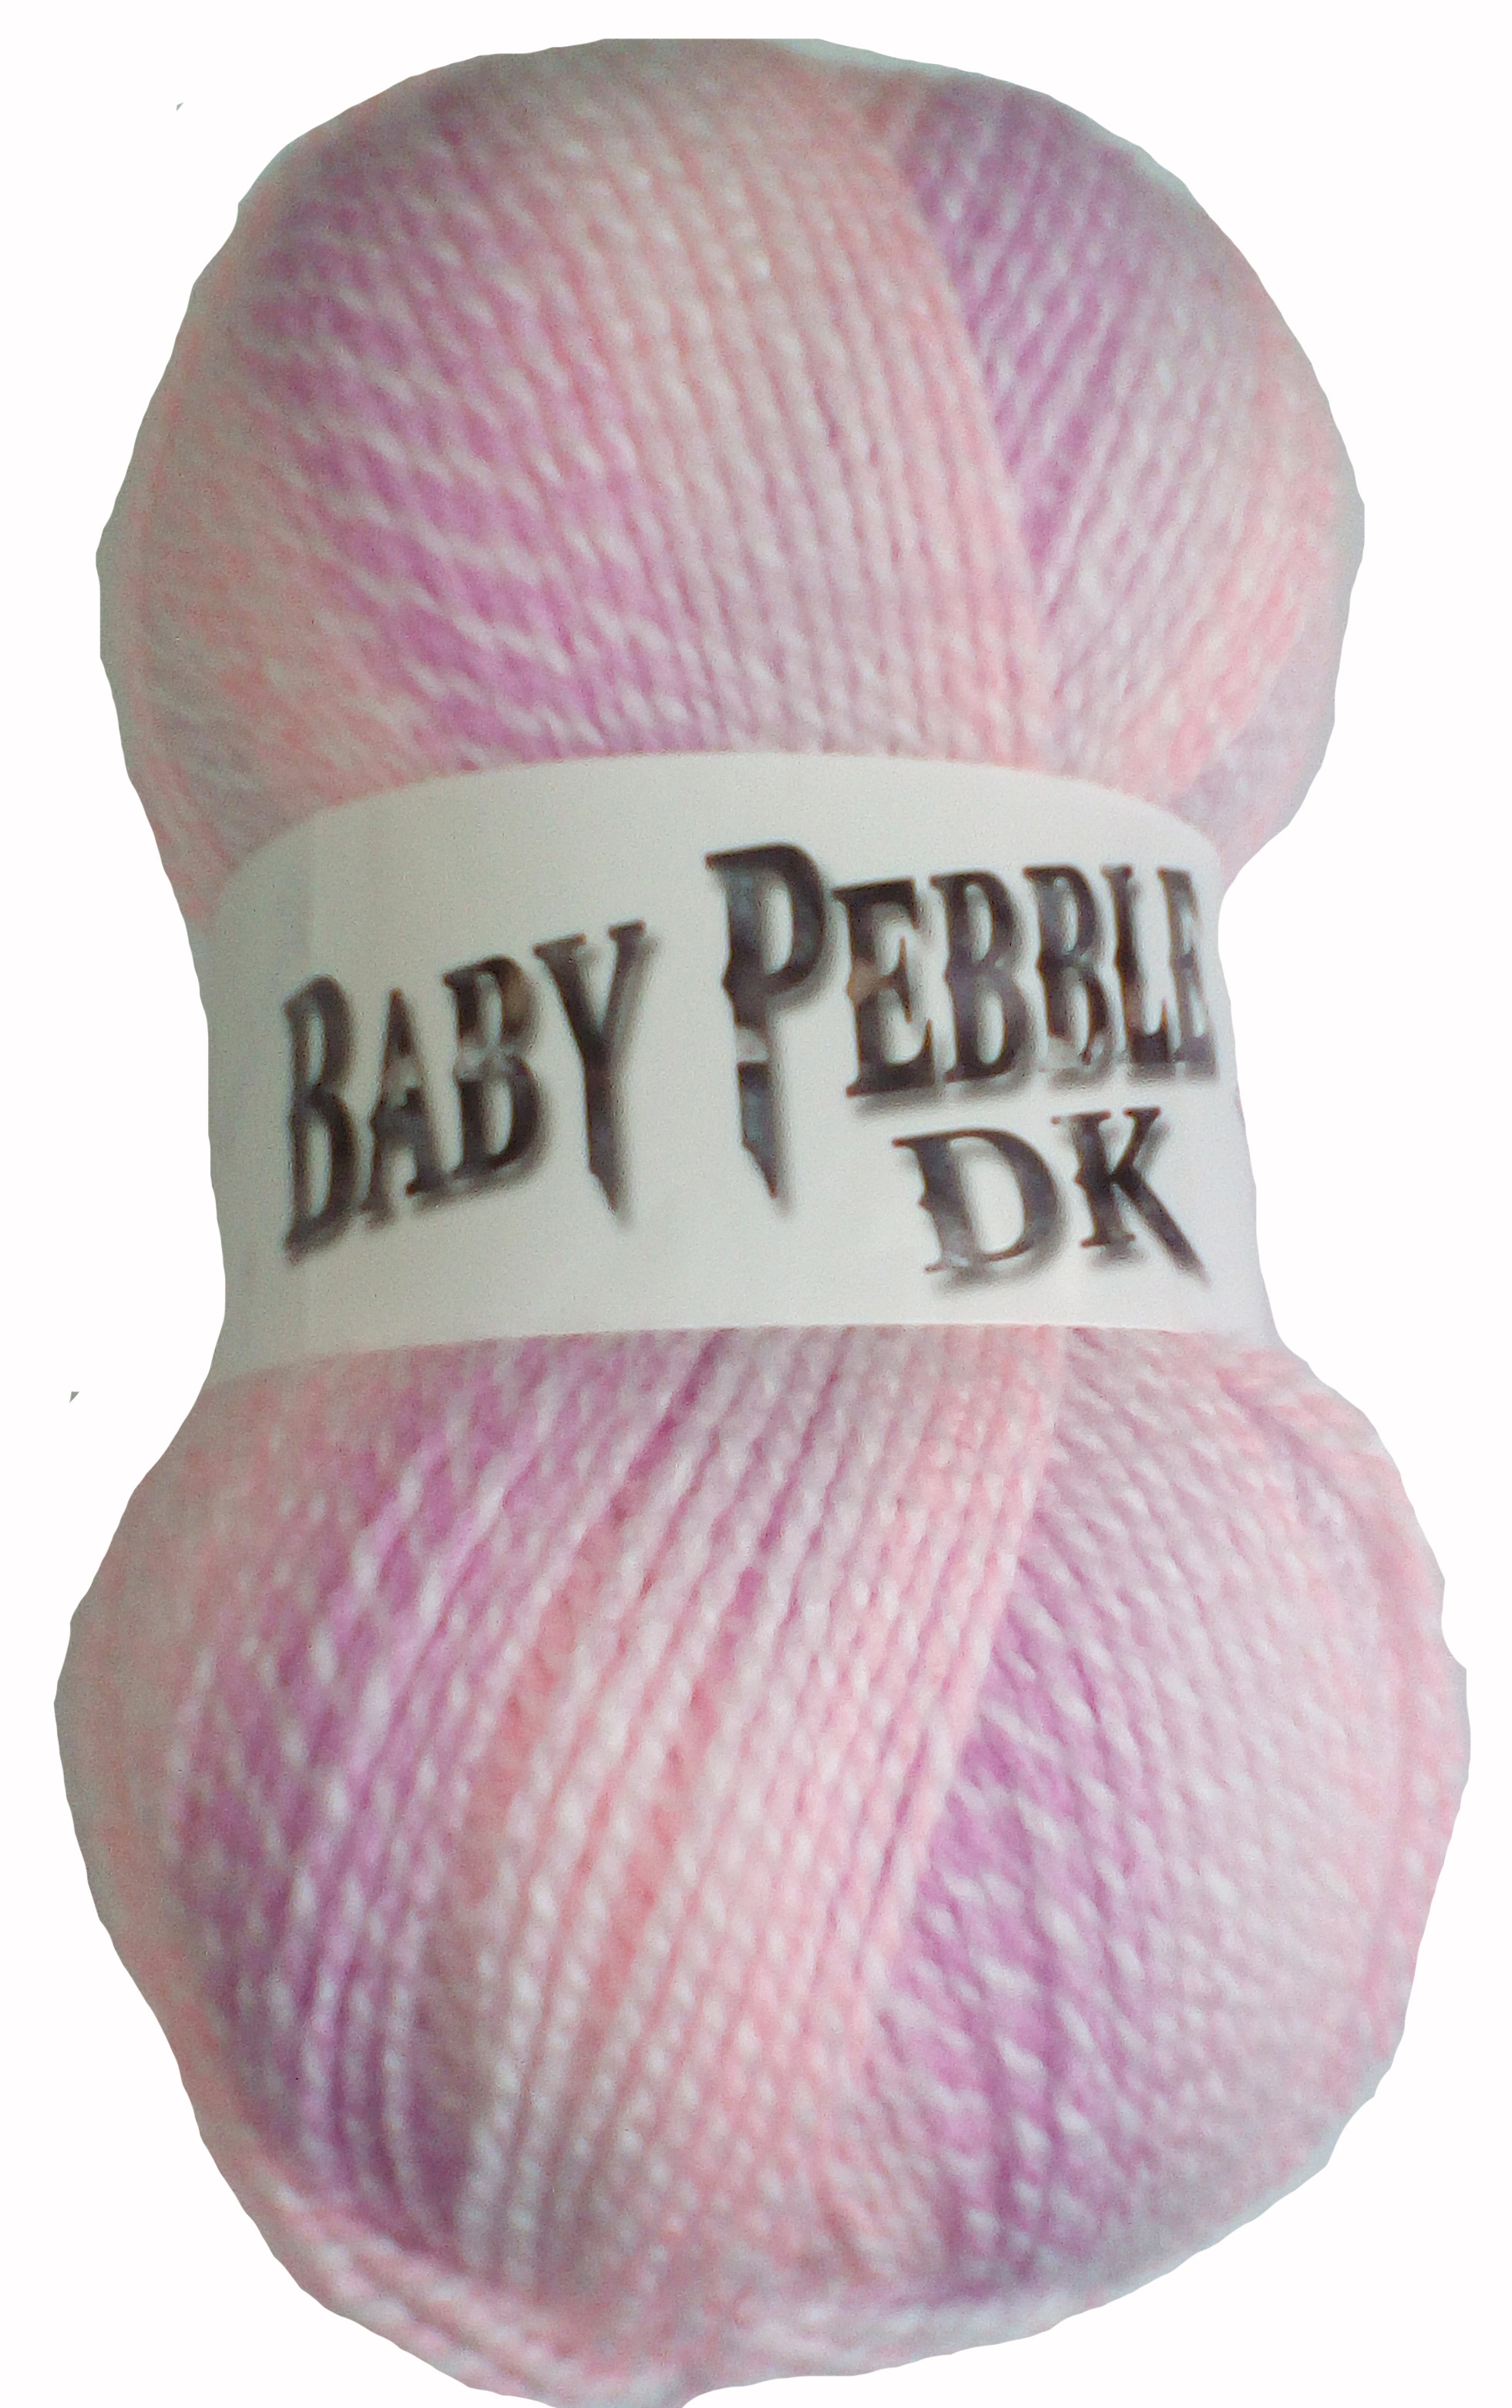 Baby Pebble 10x100g Balls Gelato 105